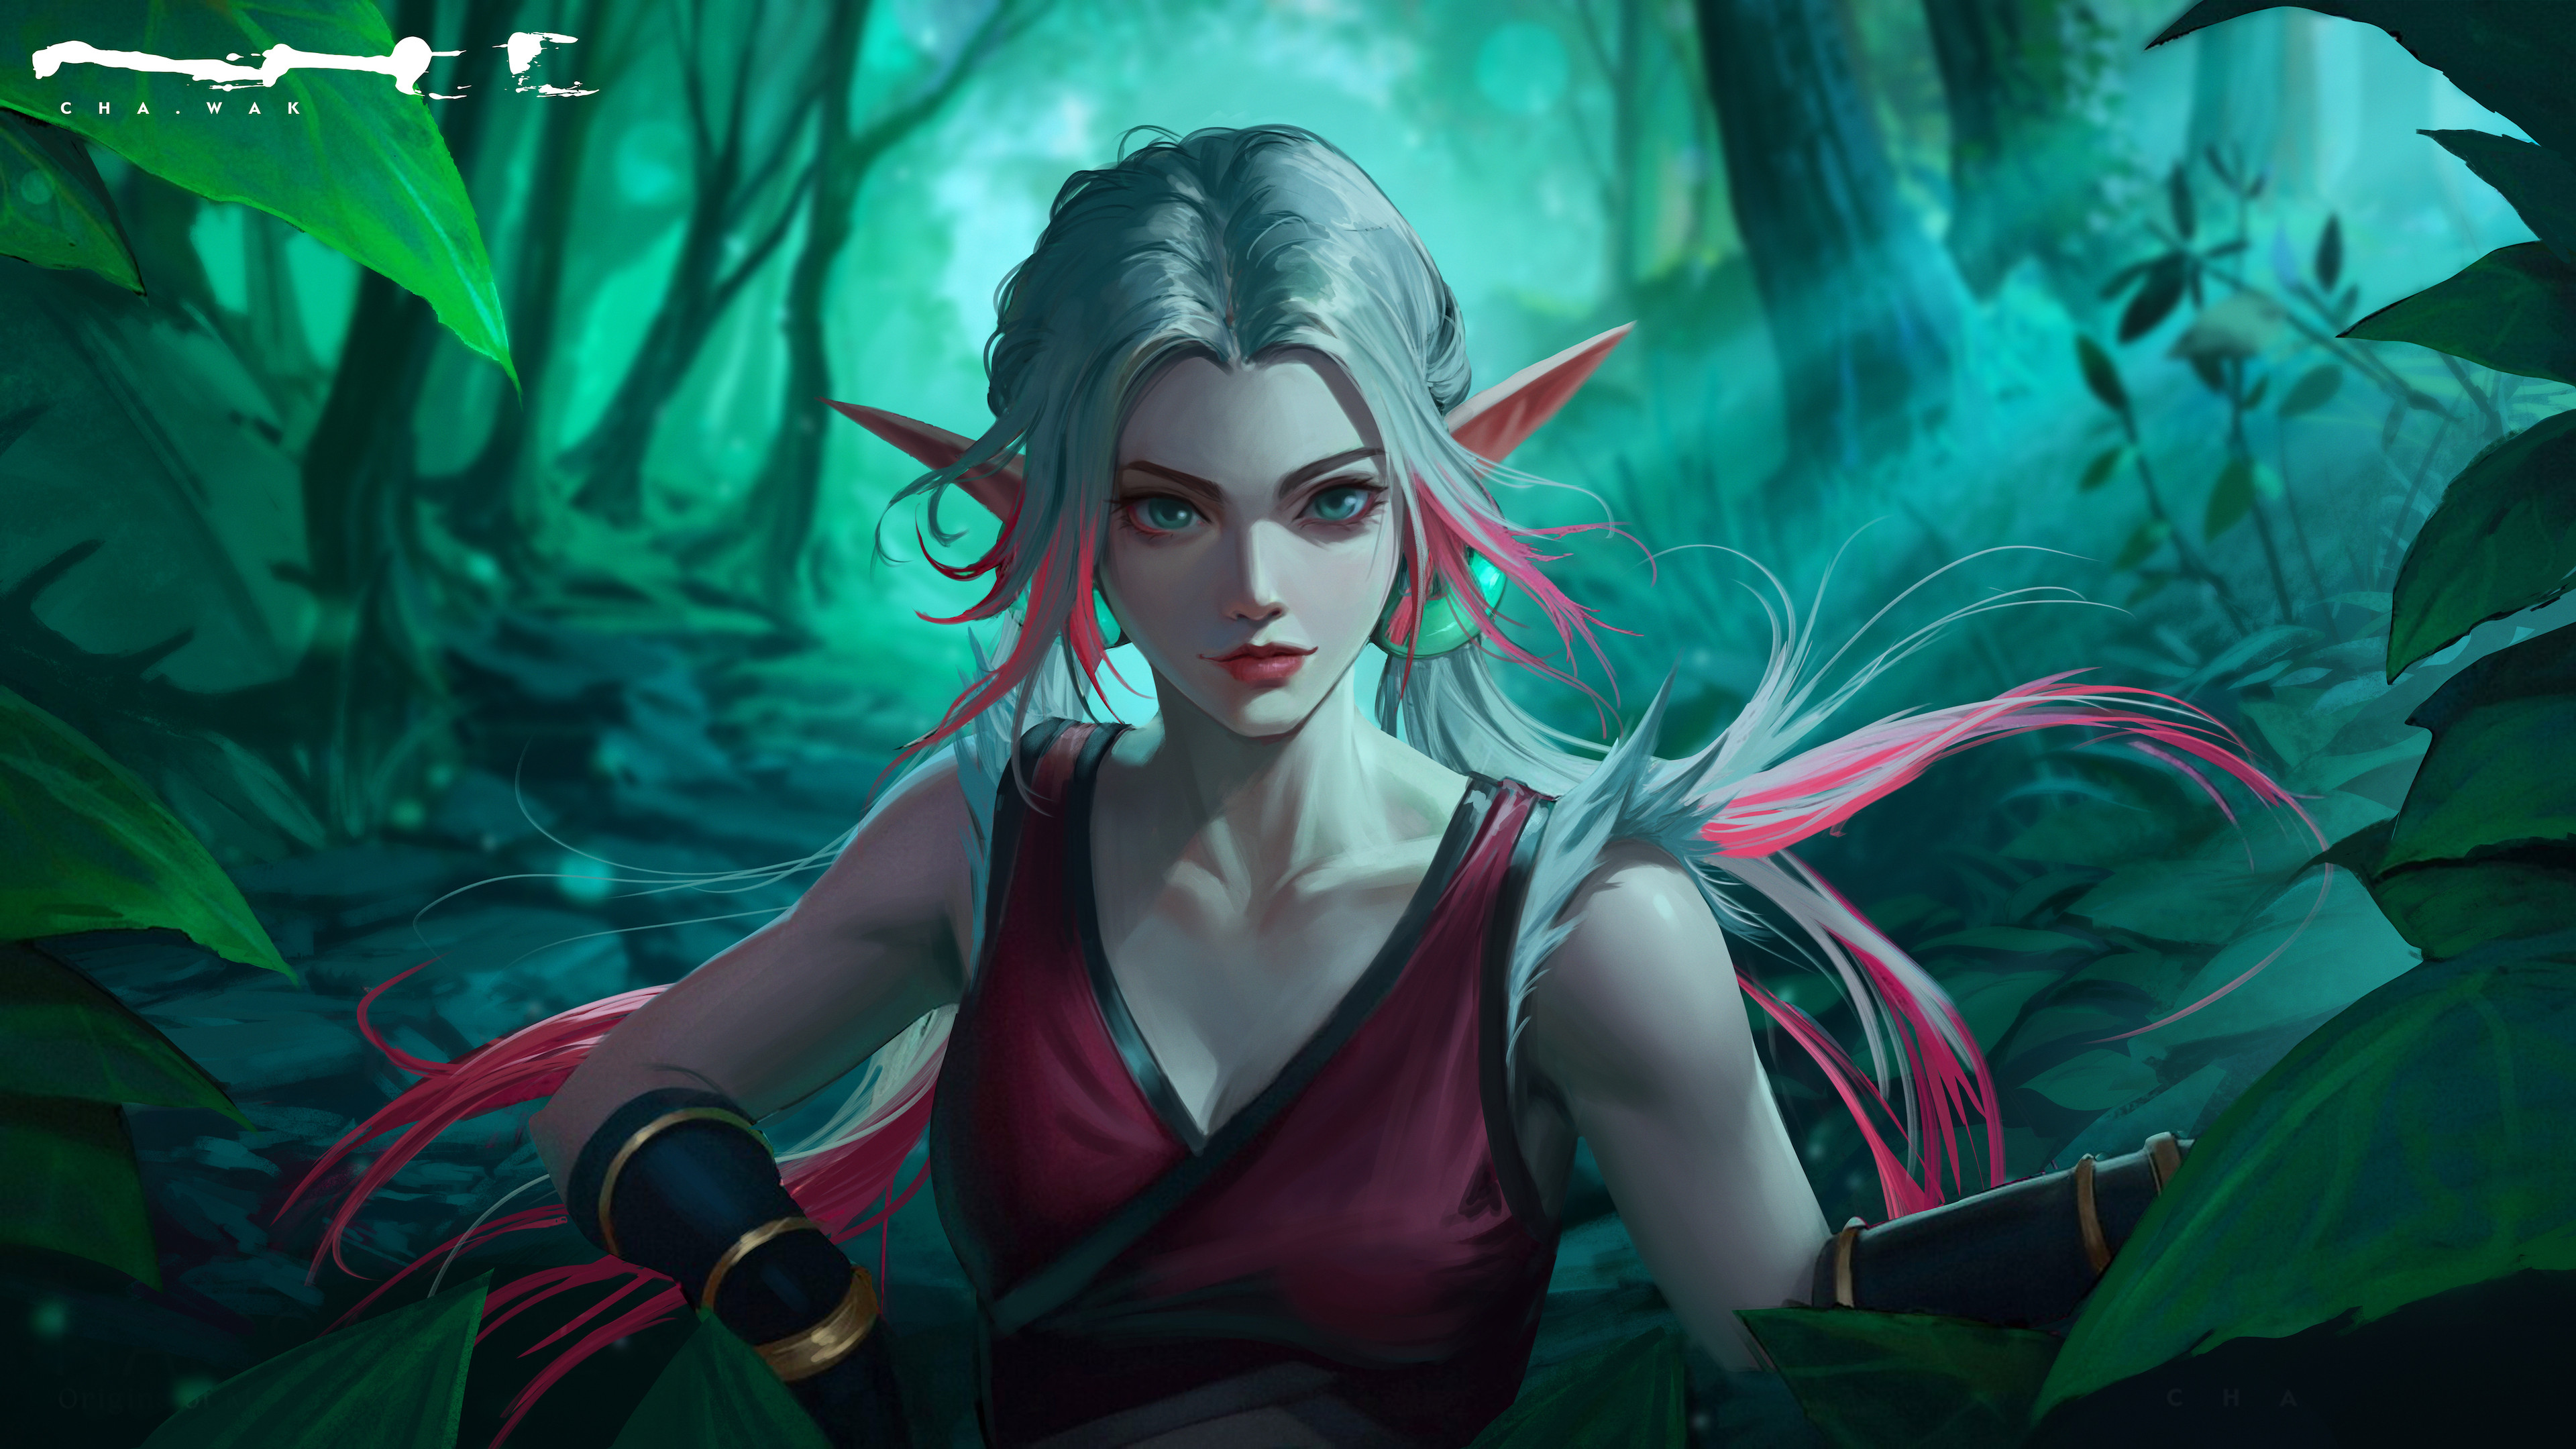 Digital Art Artwork Illustration Women Fantasy Art Fantasy Girl Pointy Ears Long Hair Forest 4K Natu 3840x2160